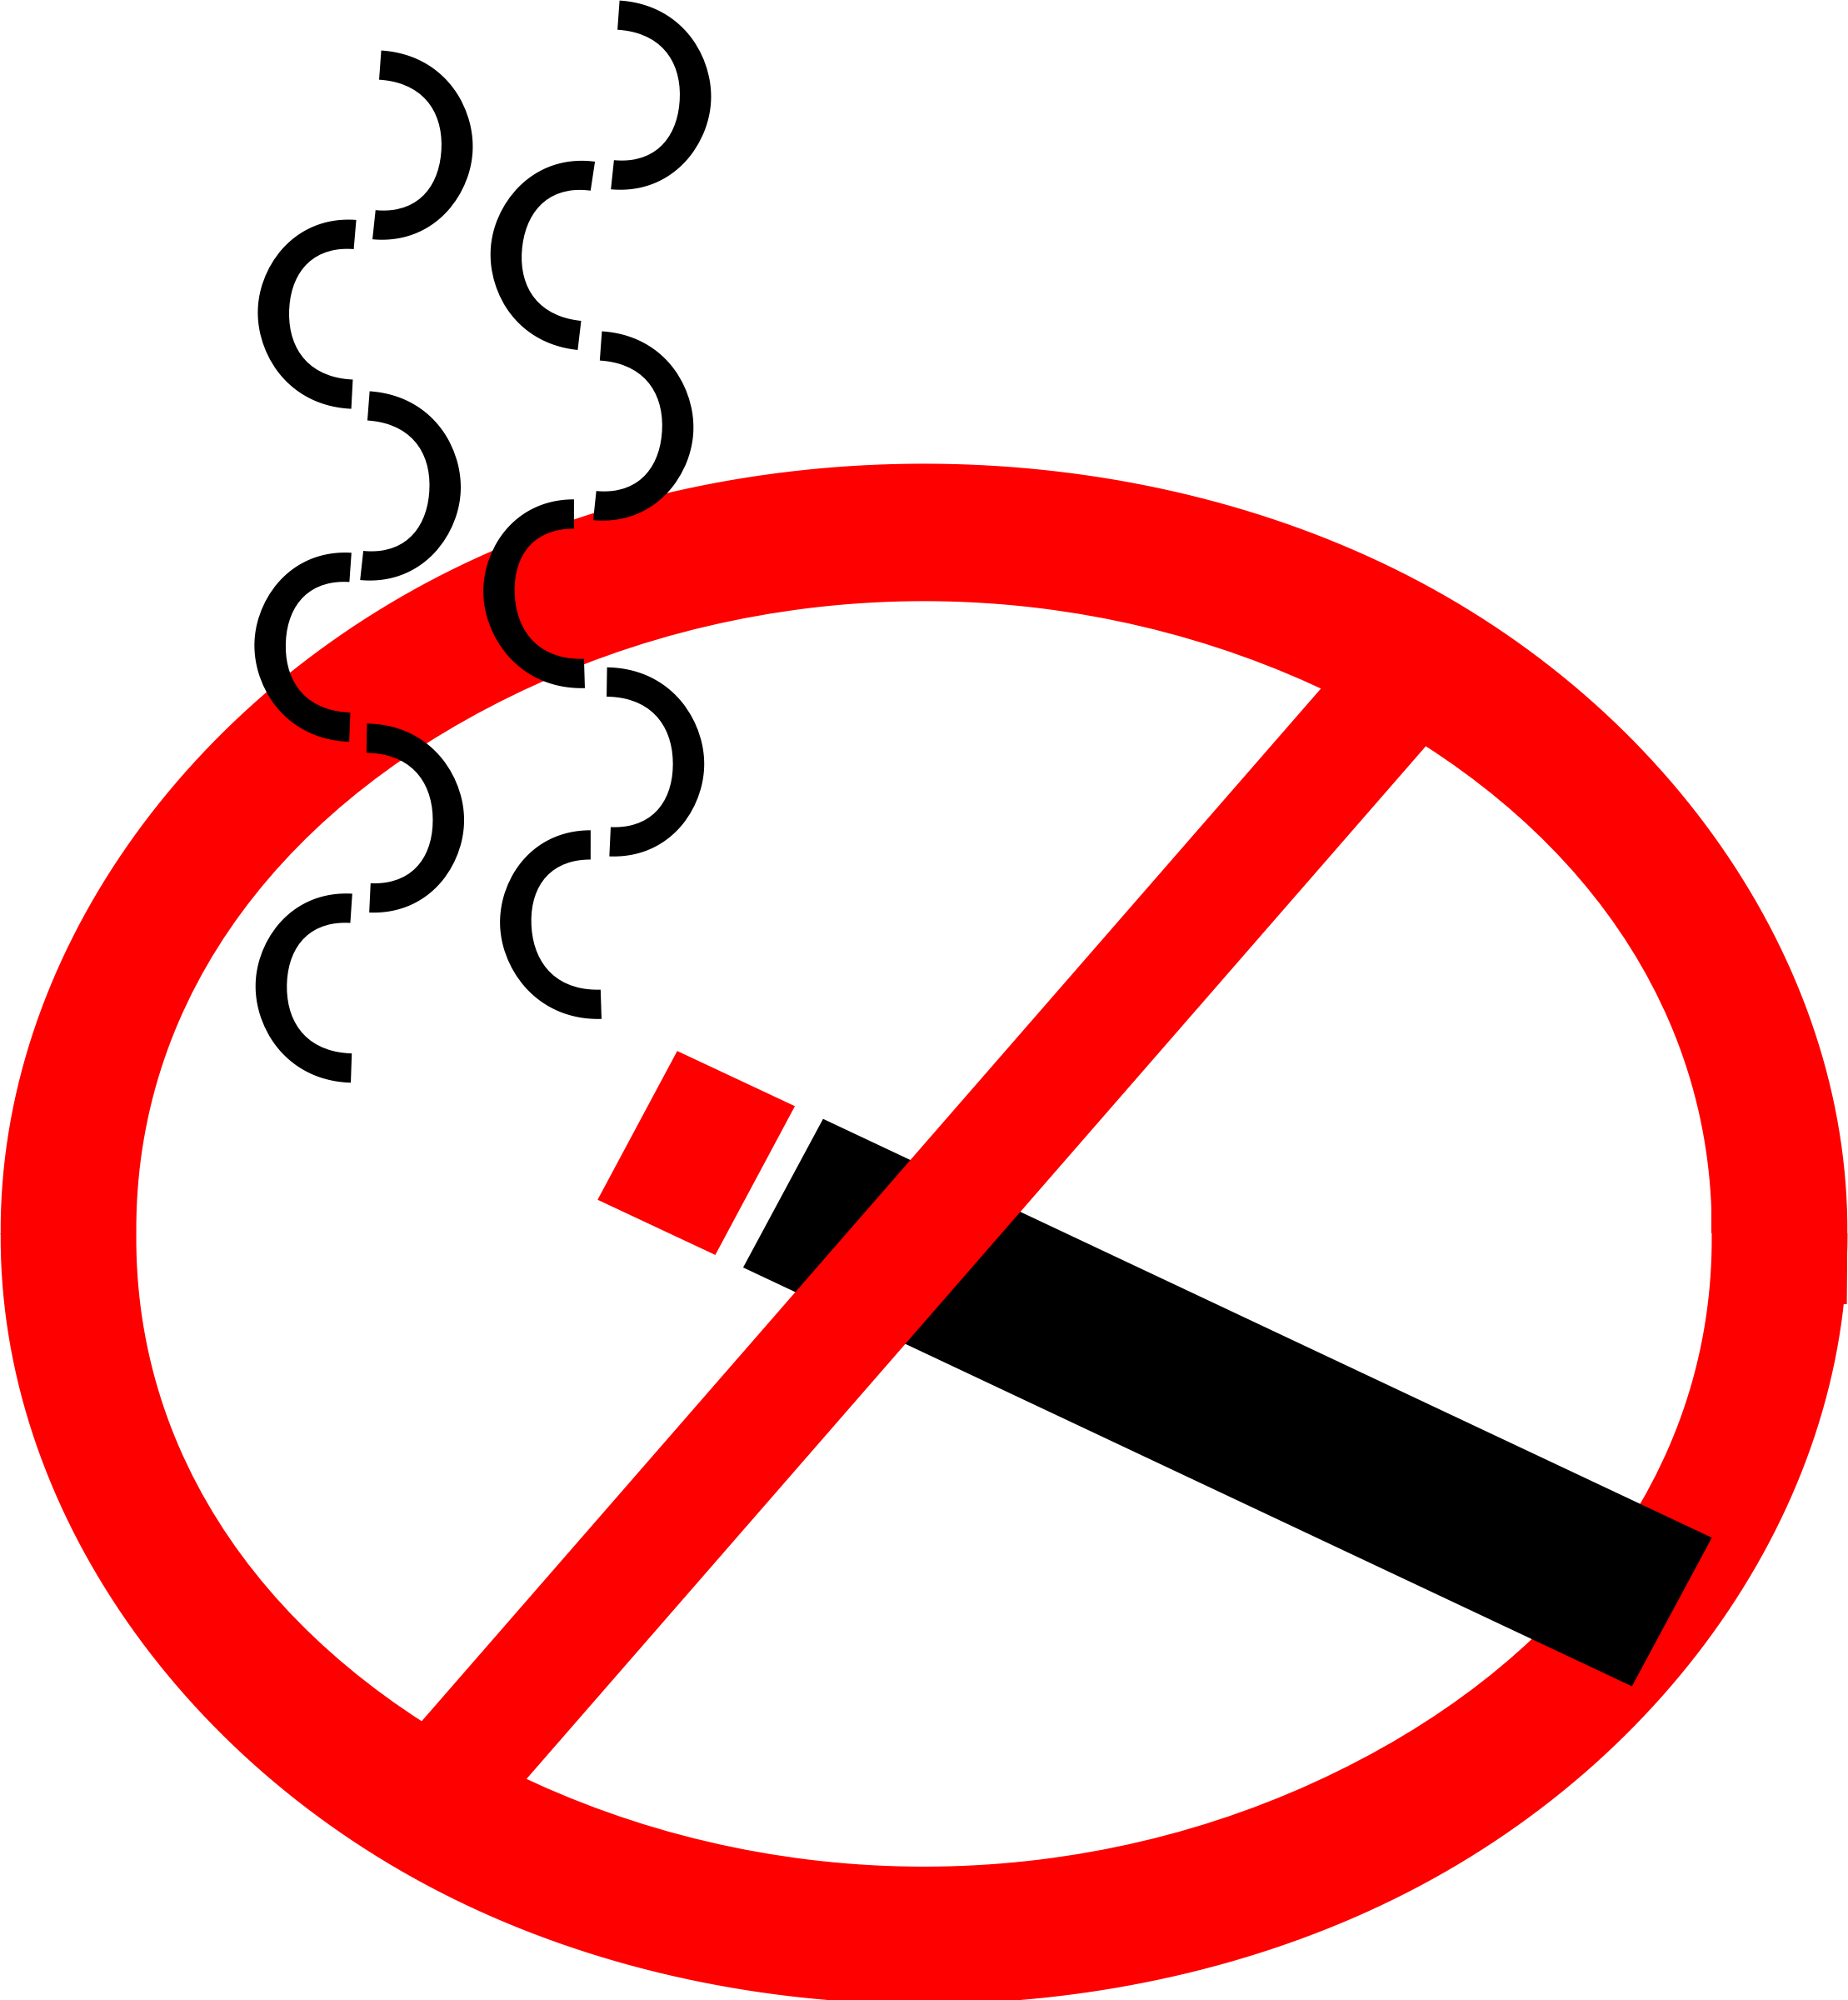 No smoking PNG image free download